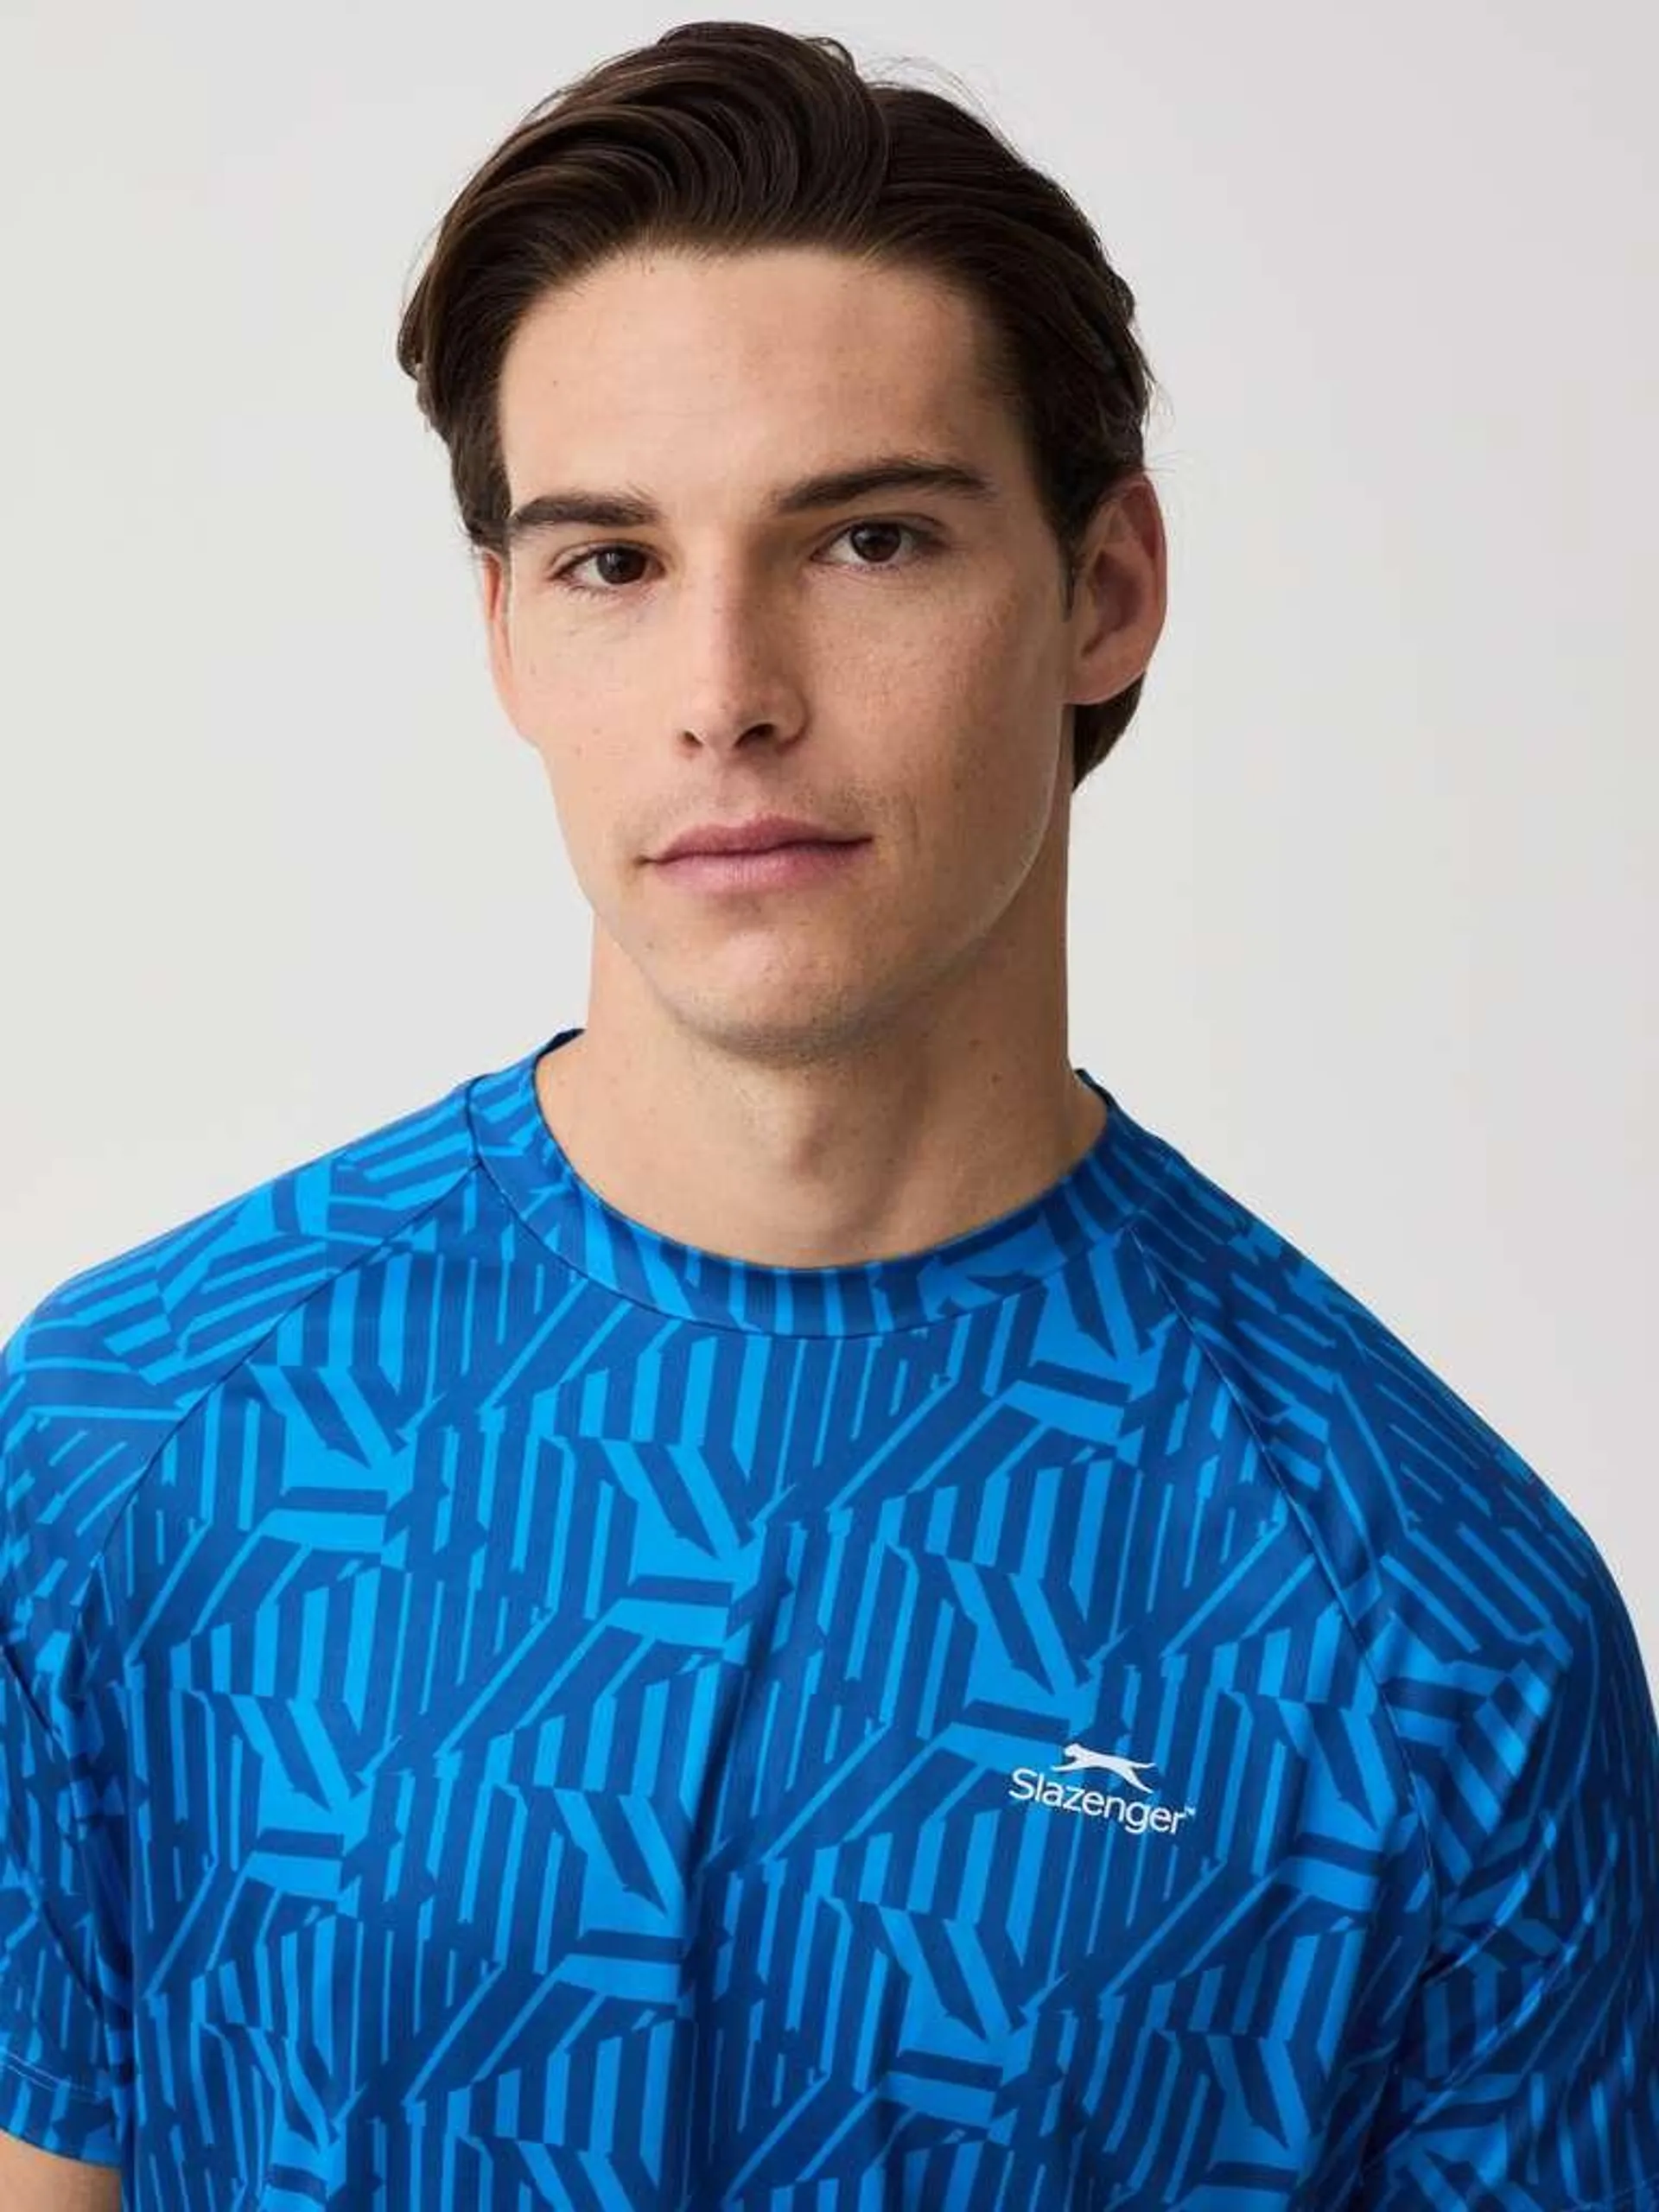 Blue/Light Blue Slazenger tennis T-shirt with pattern